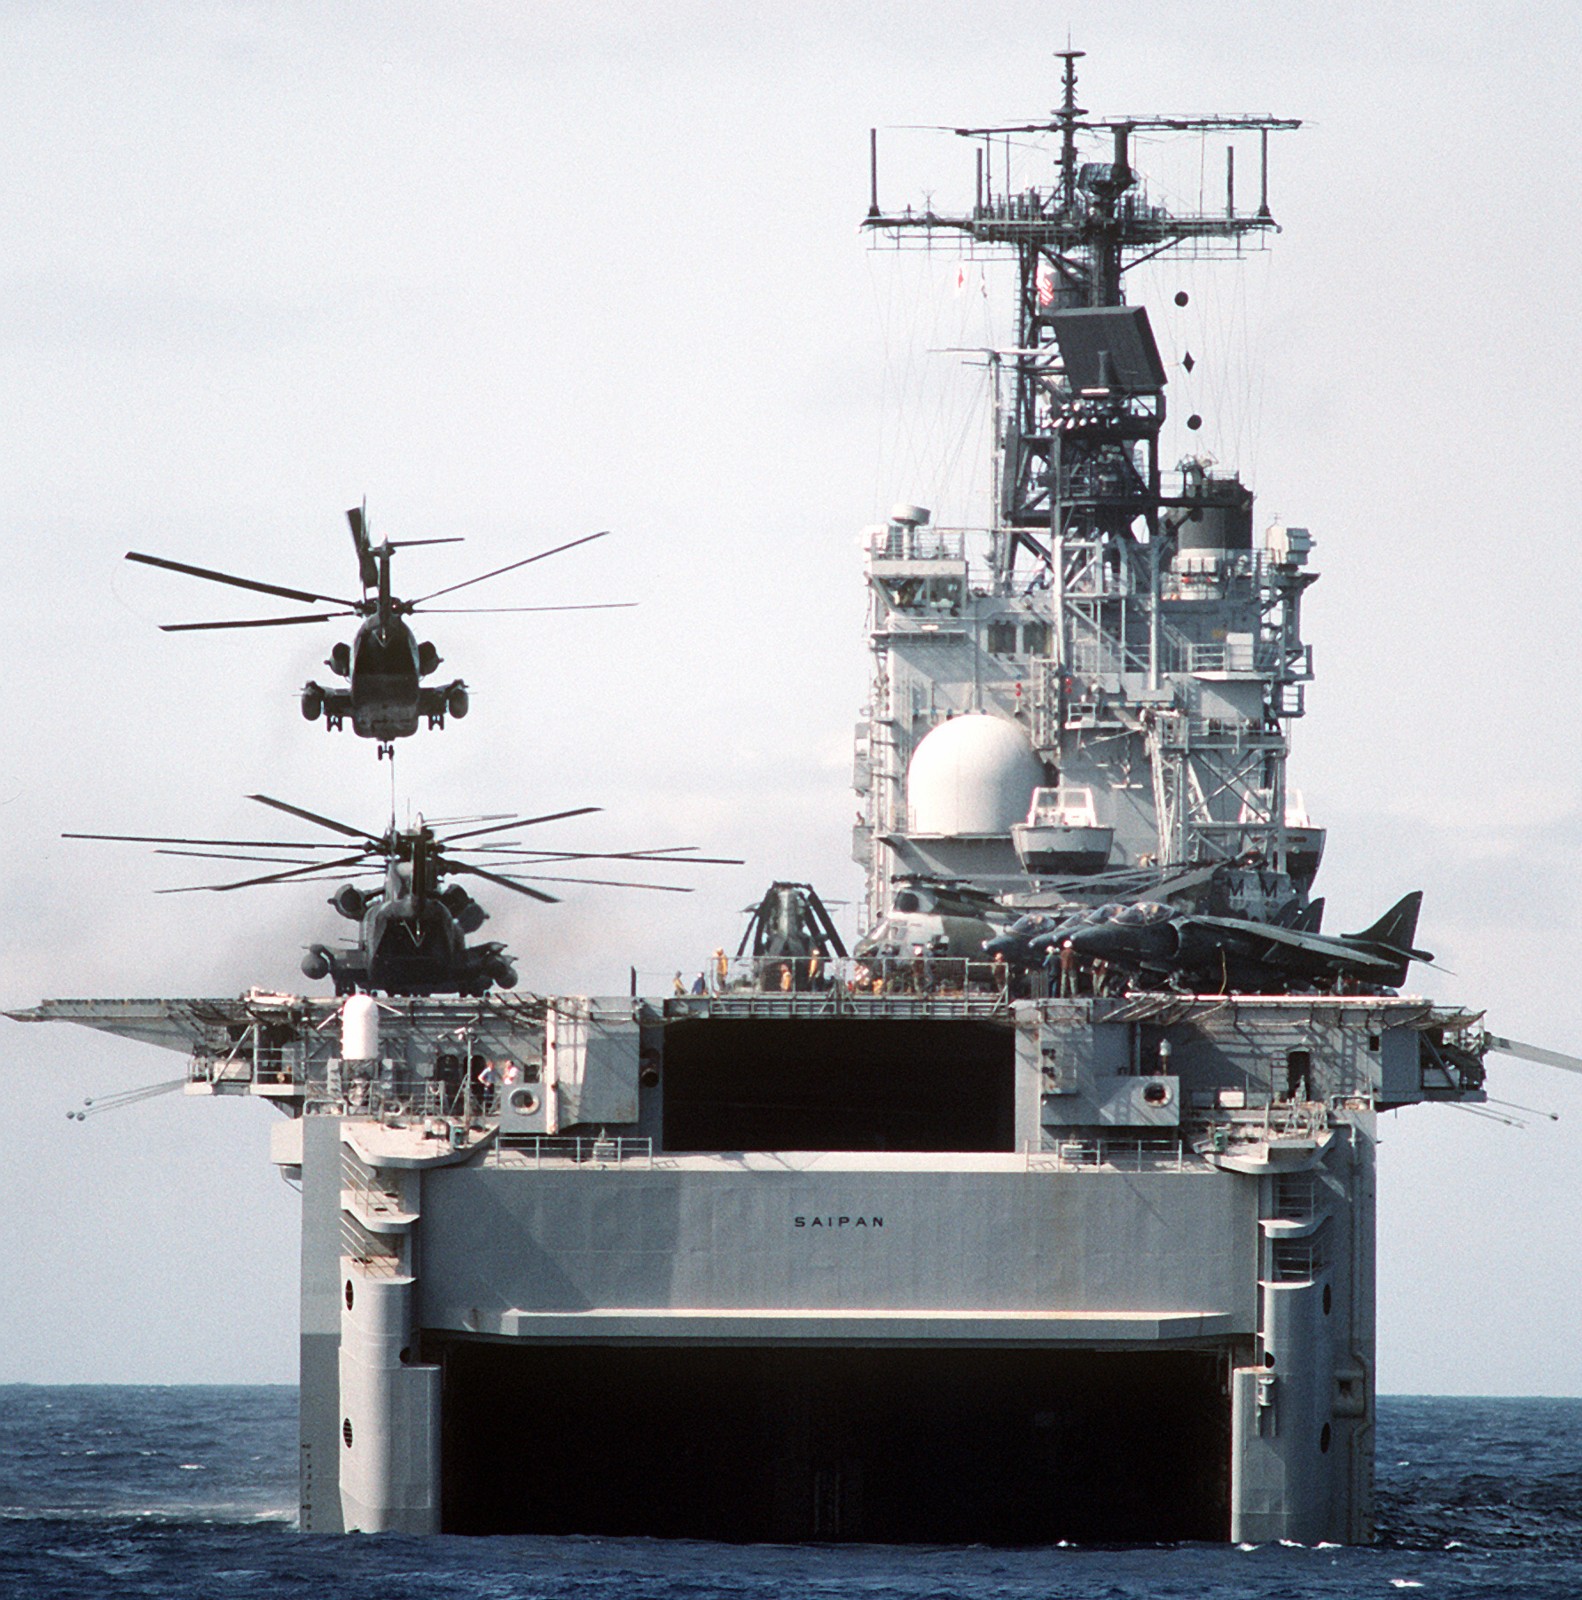 lha-2 uss saipan tarawa class amphibious assault ship us navy 22nd meu hmm-261 usmc operation sharp edge liberia 82